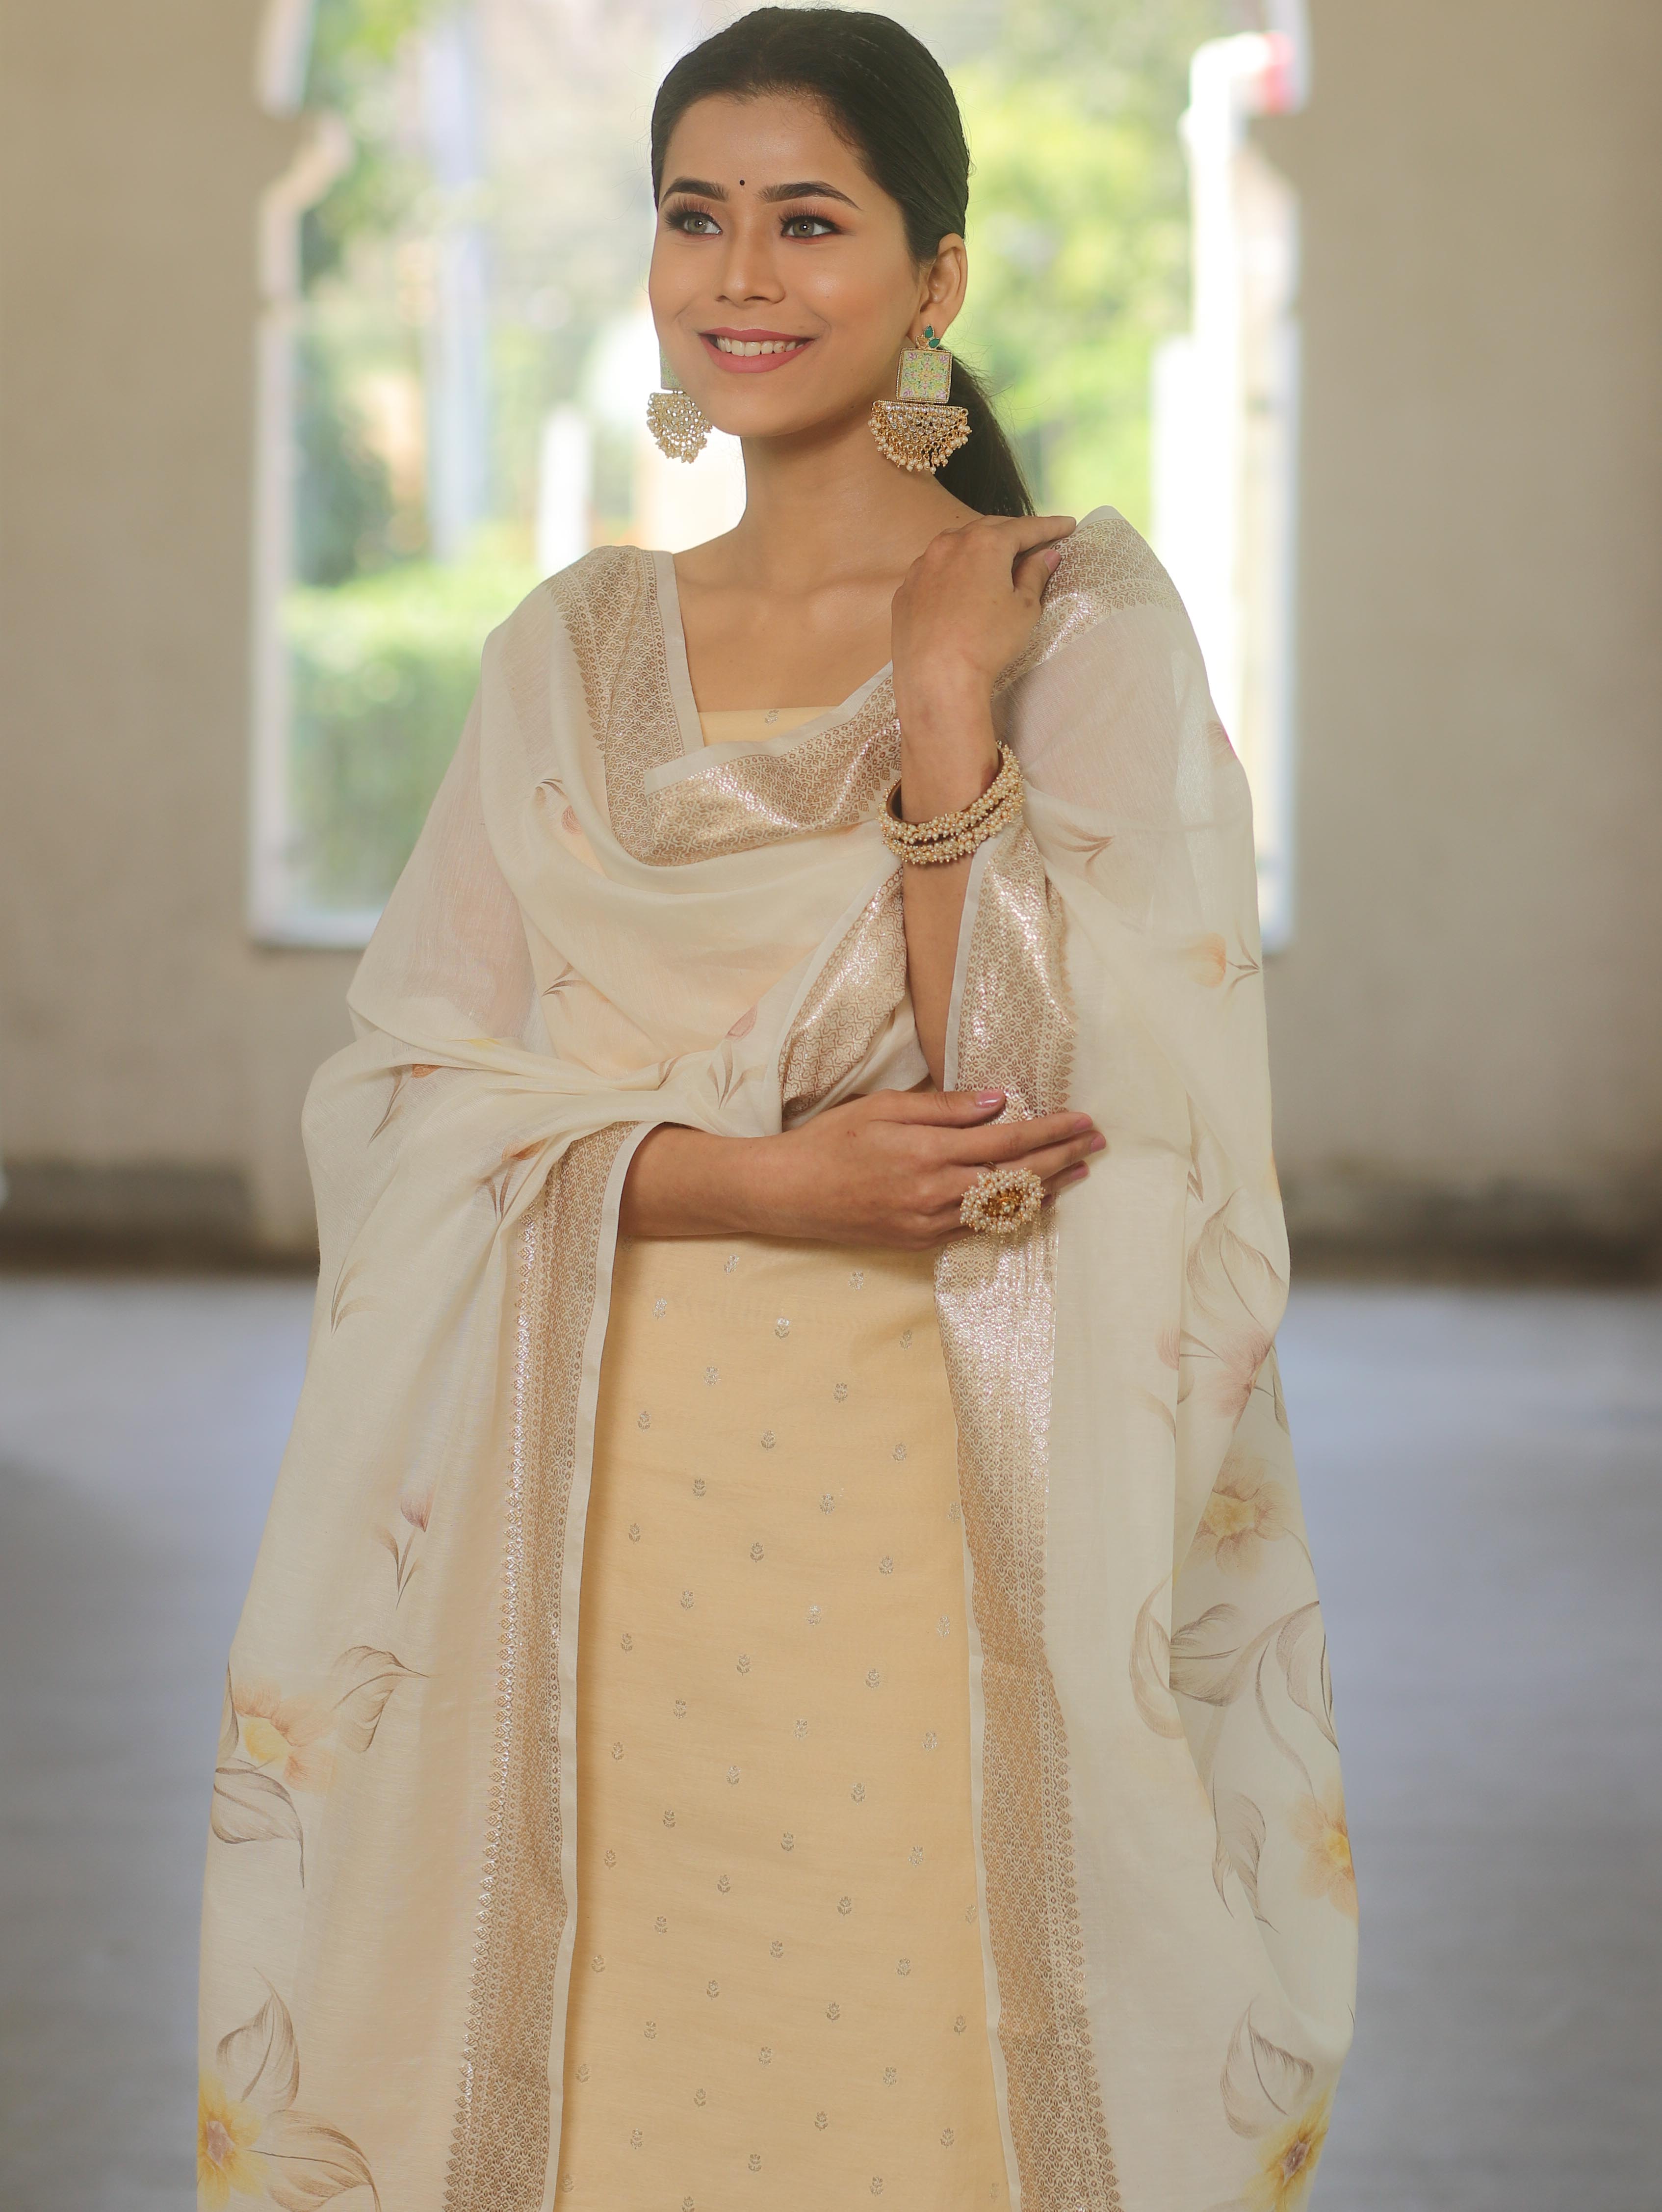 Banarasee Lurex Cotton Zari Work Salwar Kameez Fabric With Hand Painted Dupatta-Beige